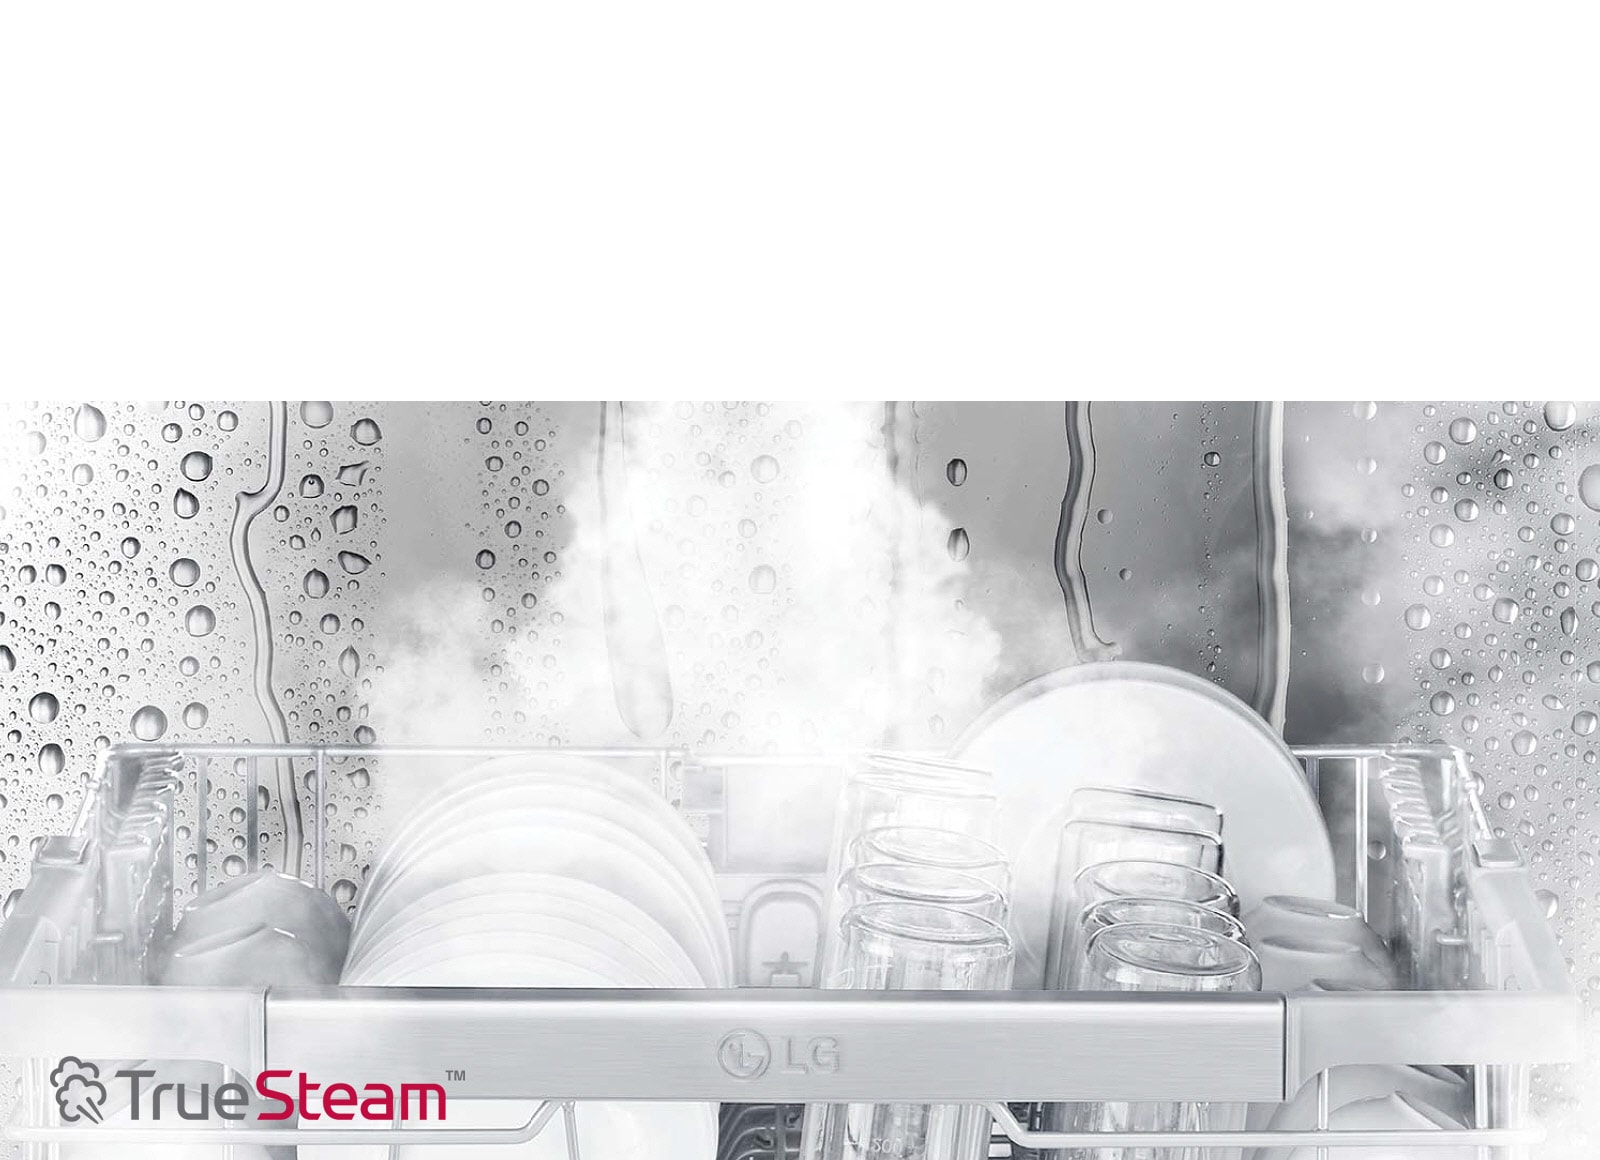 TrueSteam™ 蒸氣潔亮科技 潔亮如新 減少水漬*